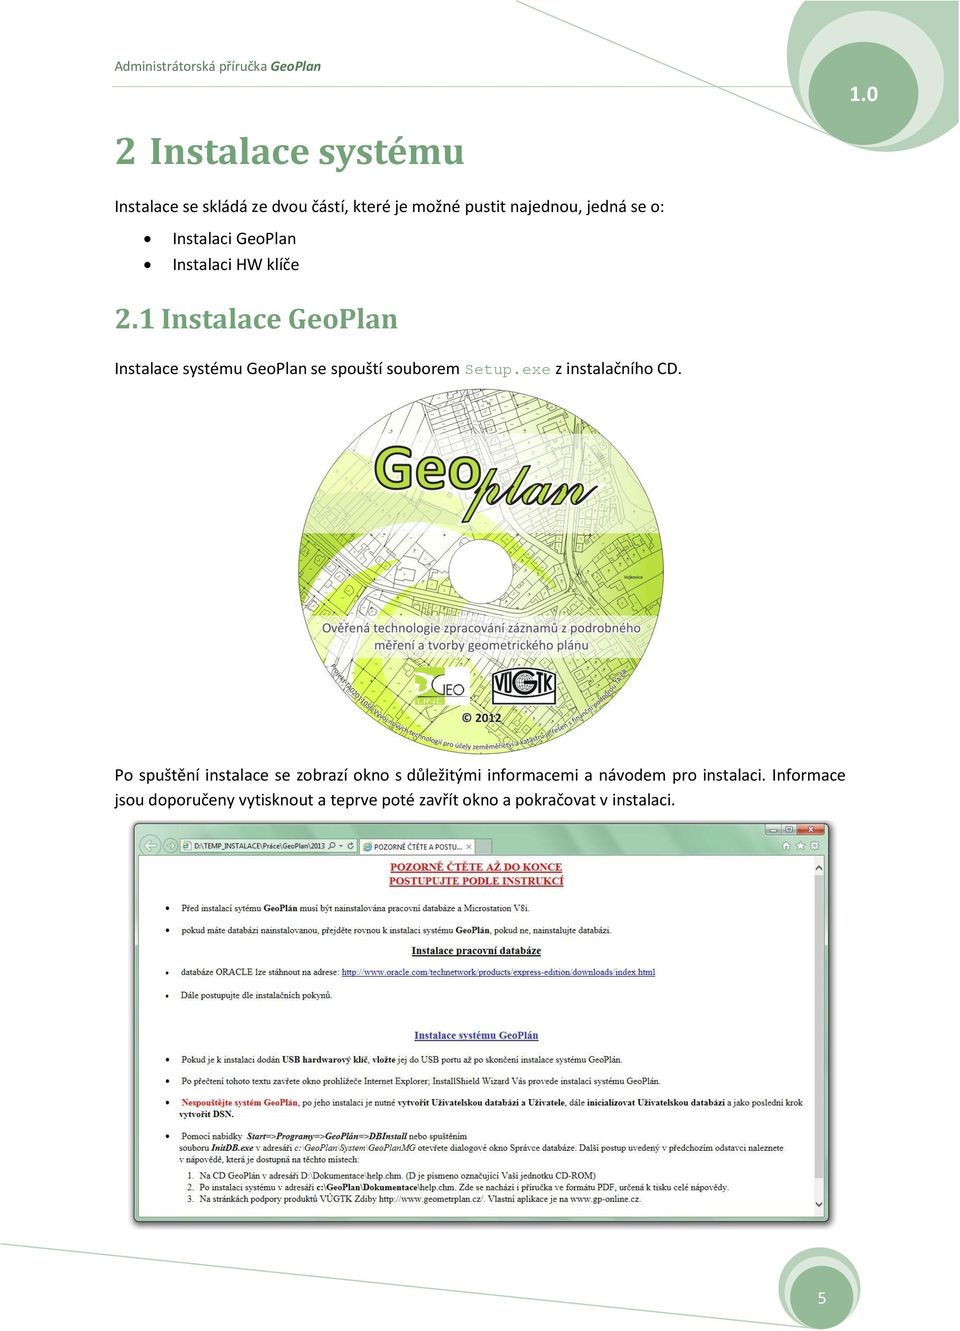 1 Instalace GeoPlan Instalace systému GeoPlan se spouští souborem Setup.exe z instalačního CD.